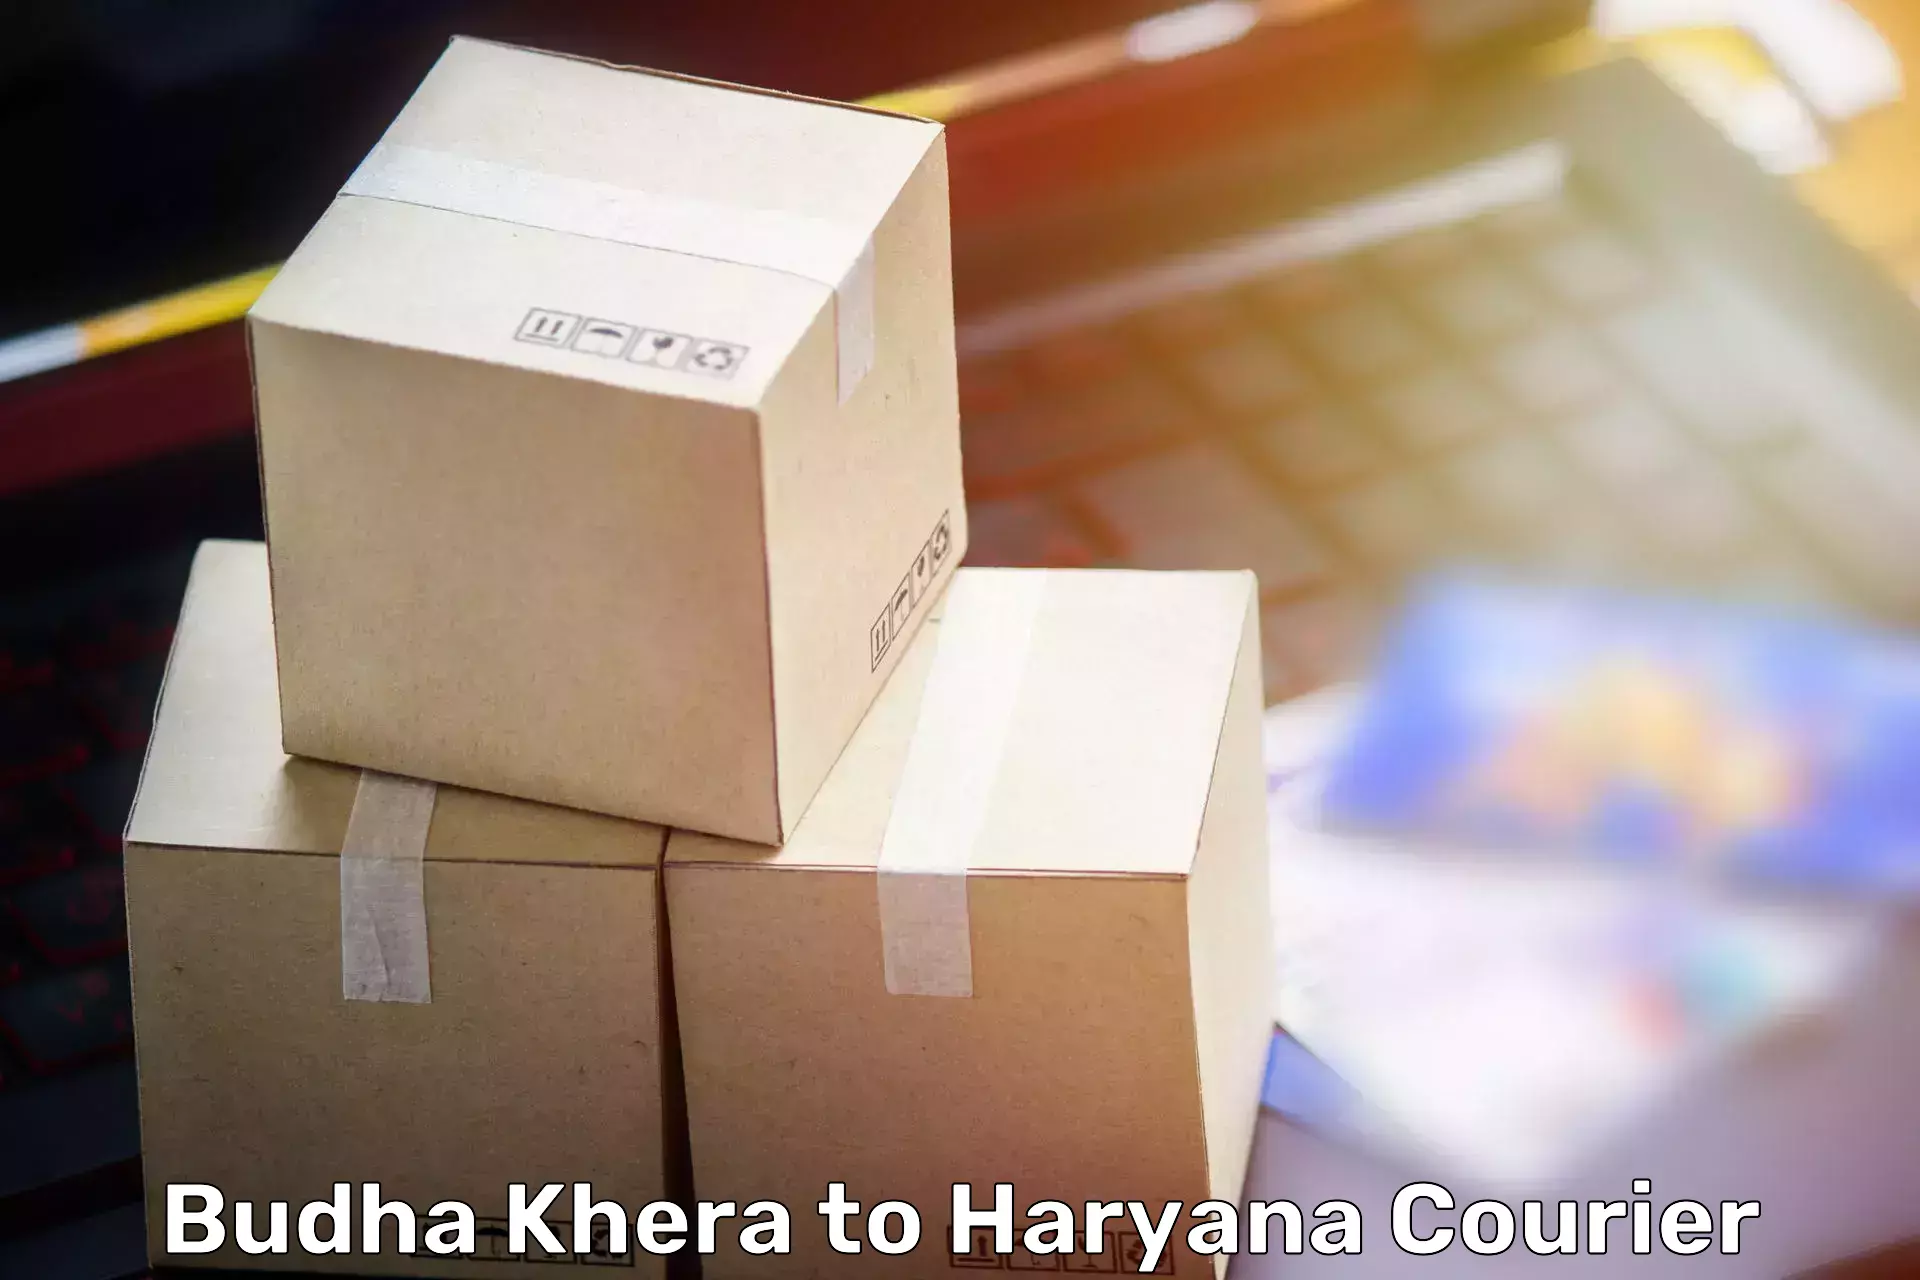 Household moving service Budha Khera to Chaudhary Charan Singh Haryana Agricultural University Hisar